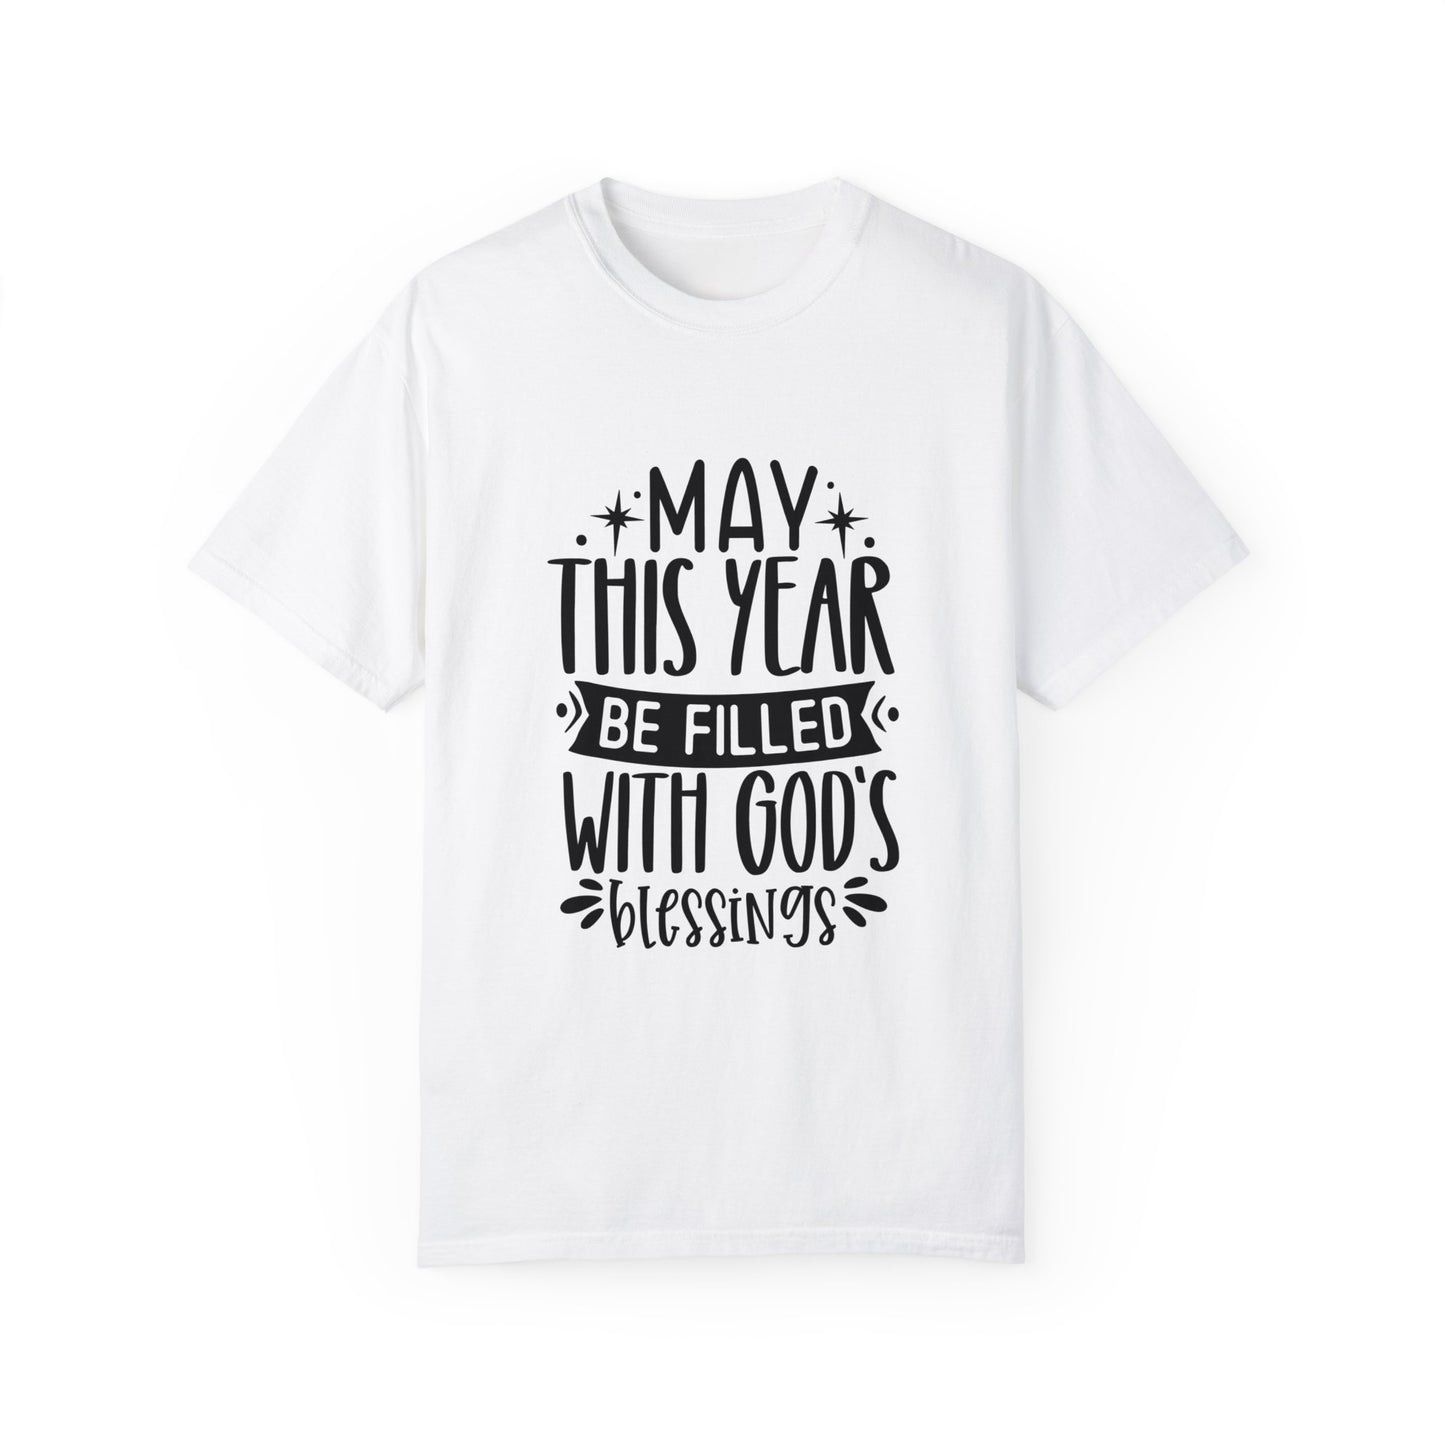 Blessings Unisex Garment-Dyed T-shirt